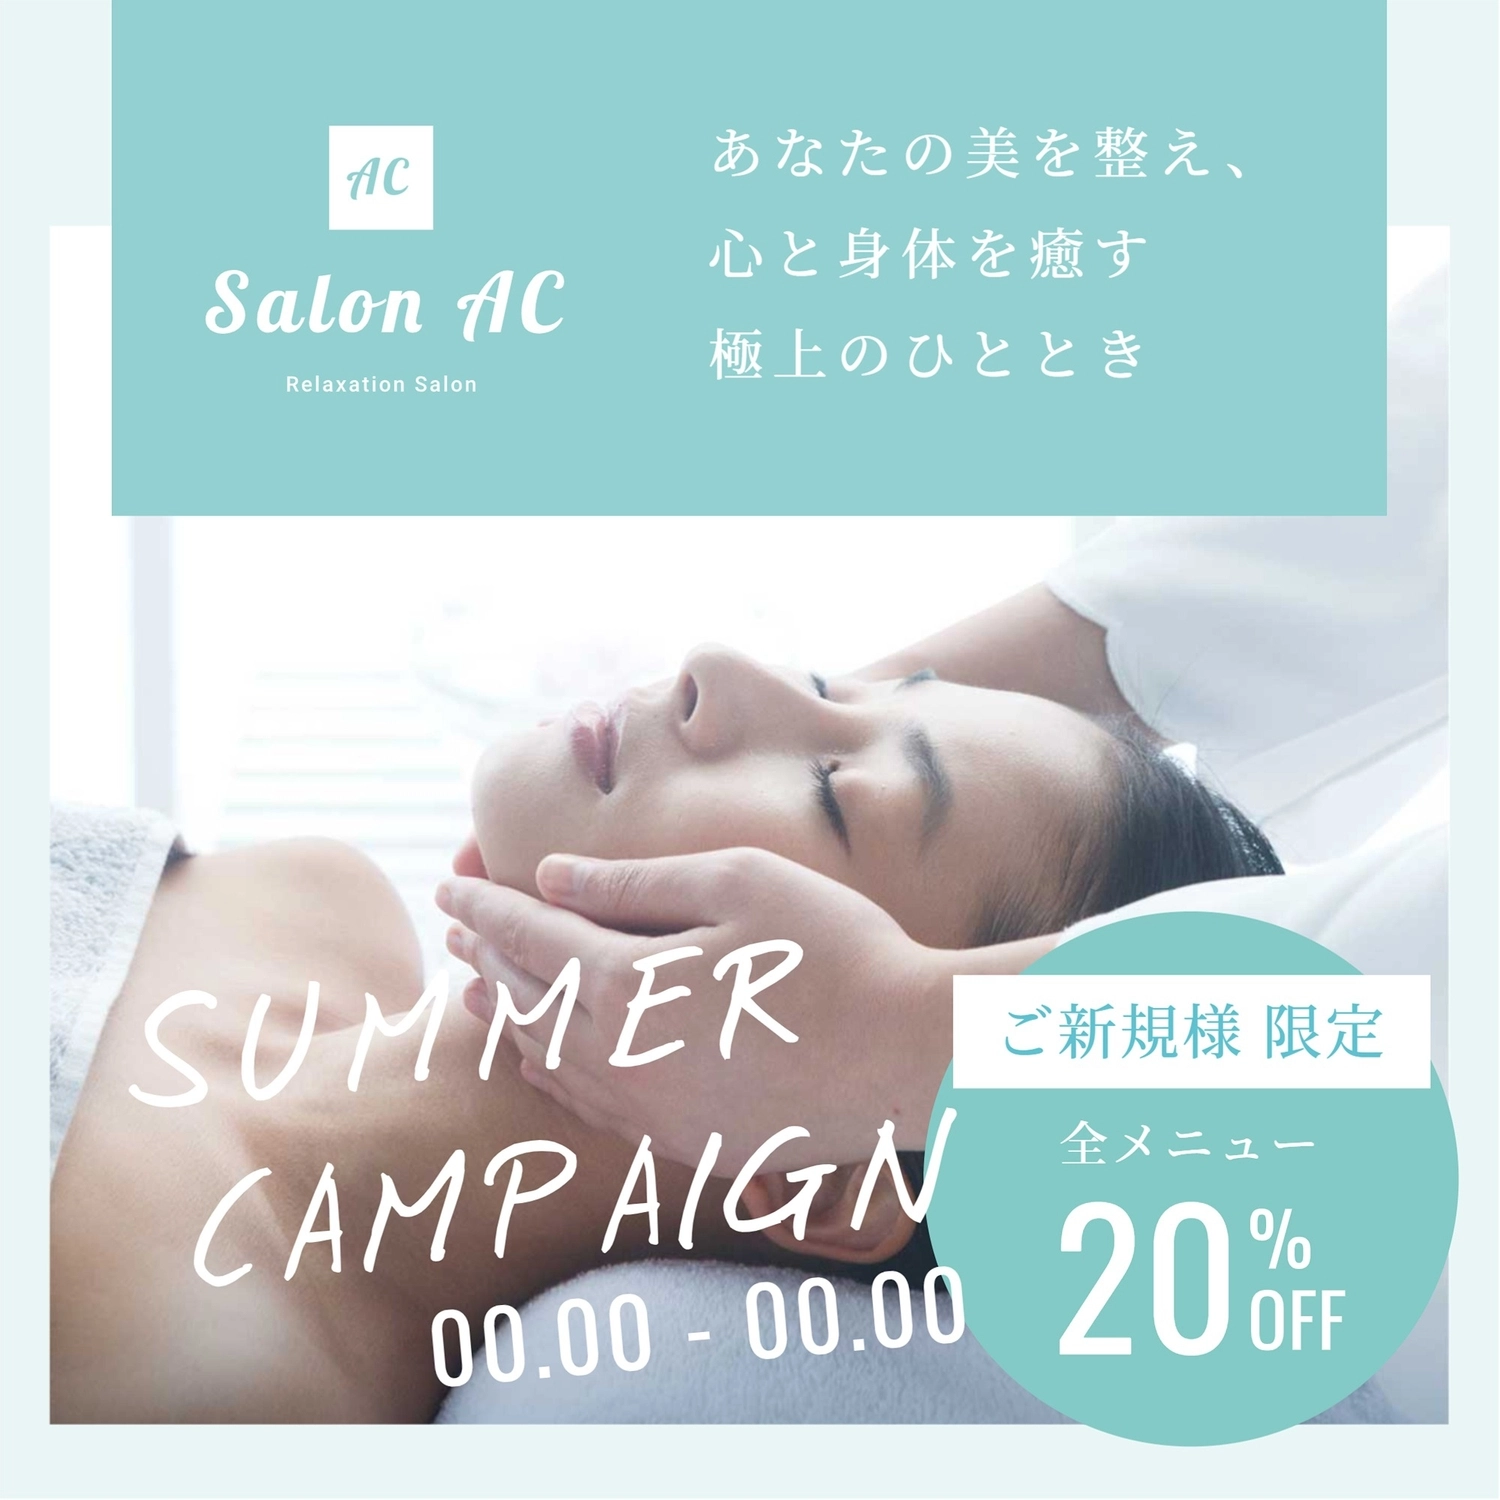 サロン（日本人女性の写真）, design, body parts, Massage, Instagram Post template